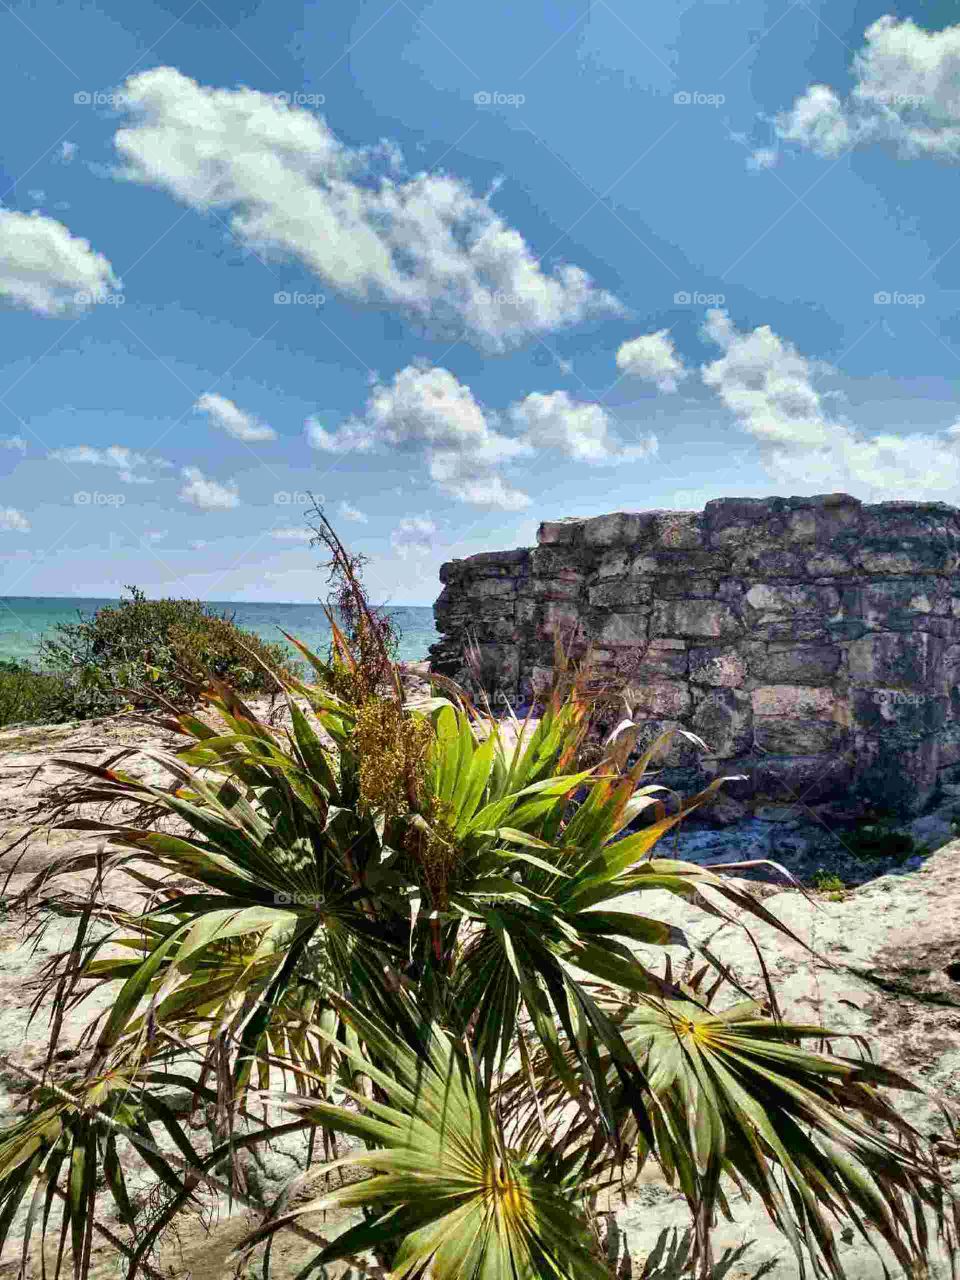 Playa Ruin. Site seeing